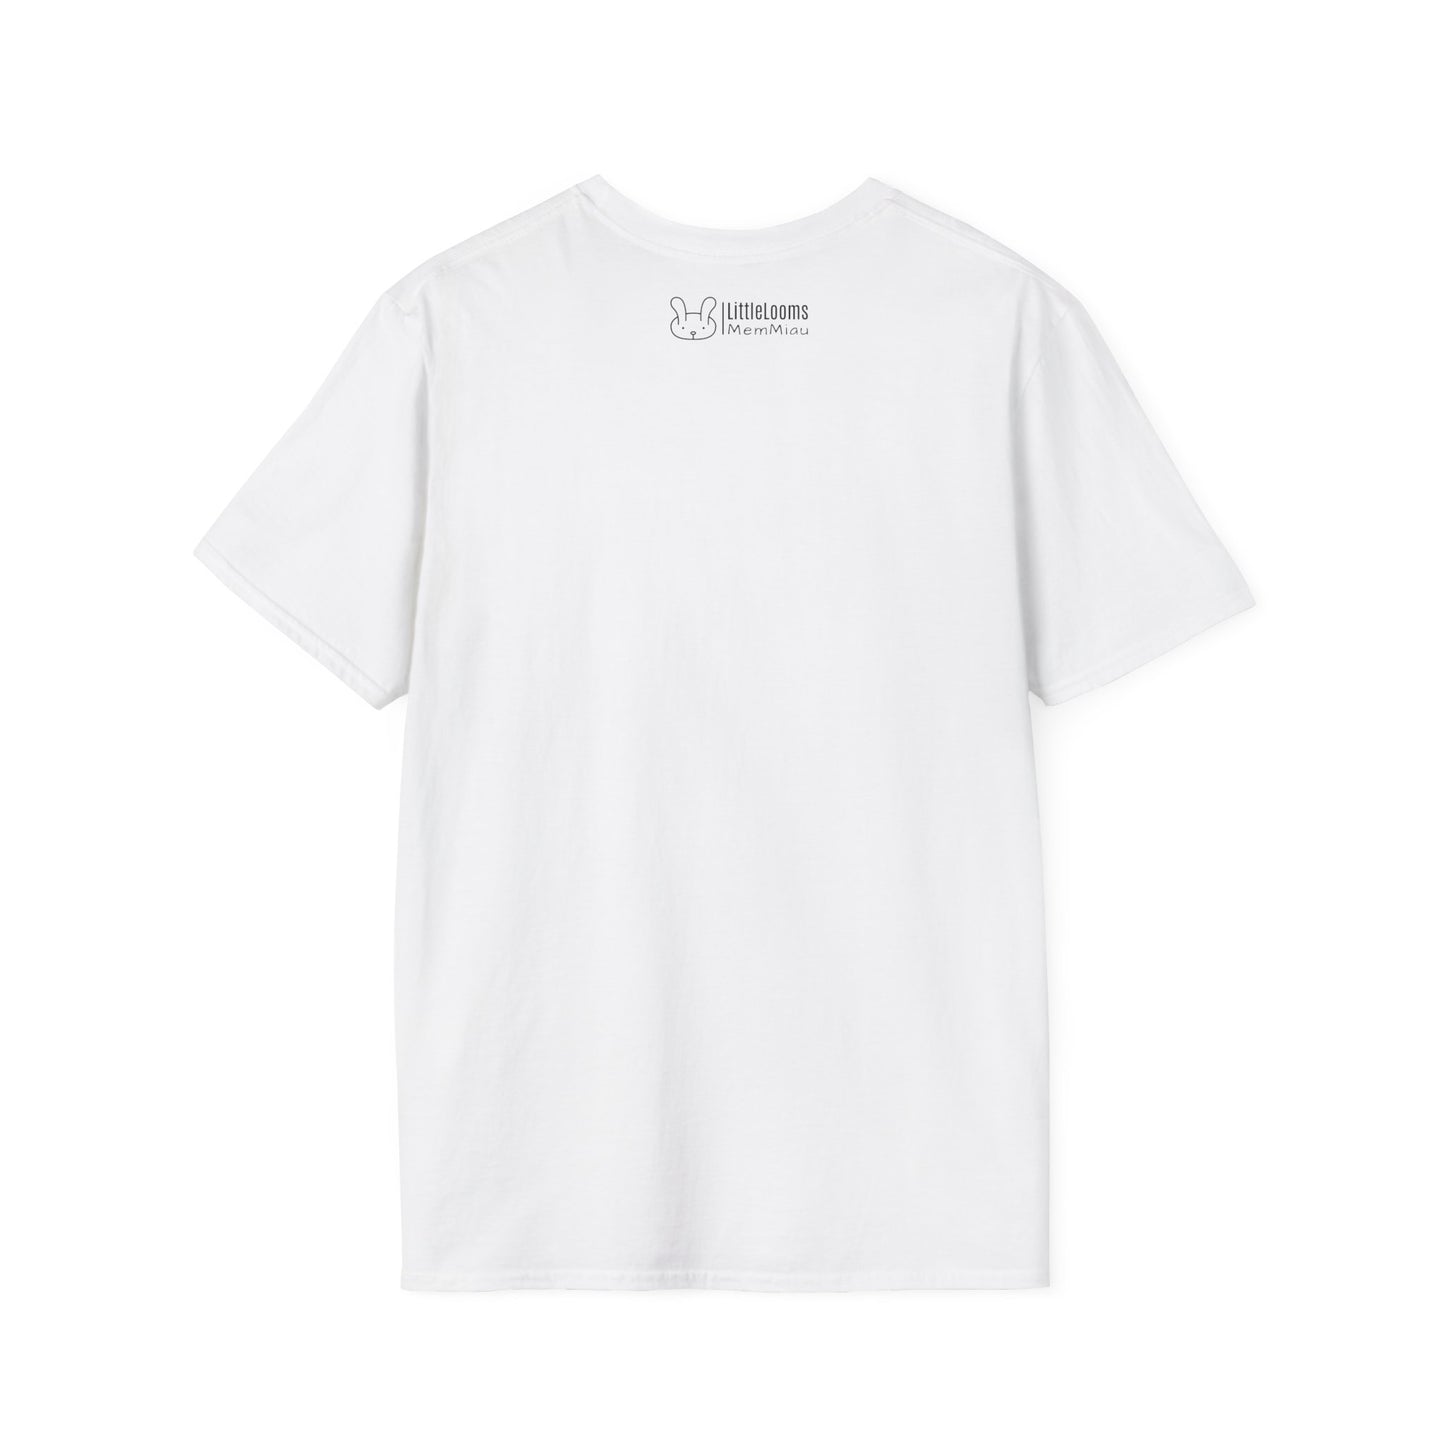 Camiseta Vintage Unisex Ética y Sostenible - Gildan